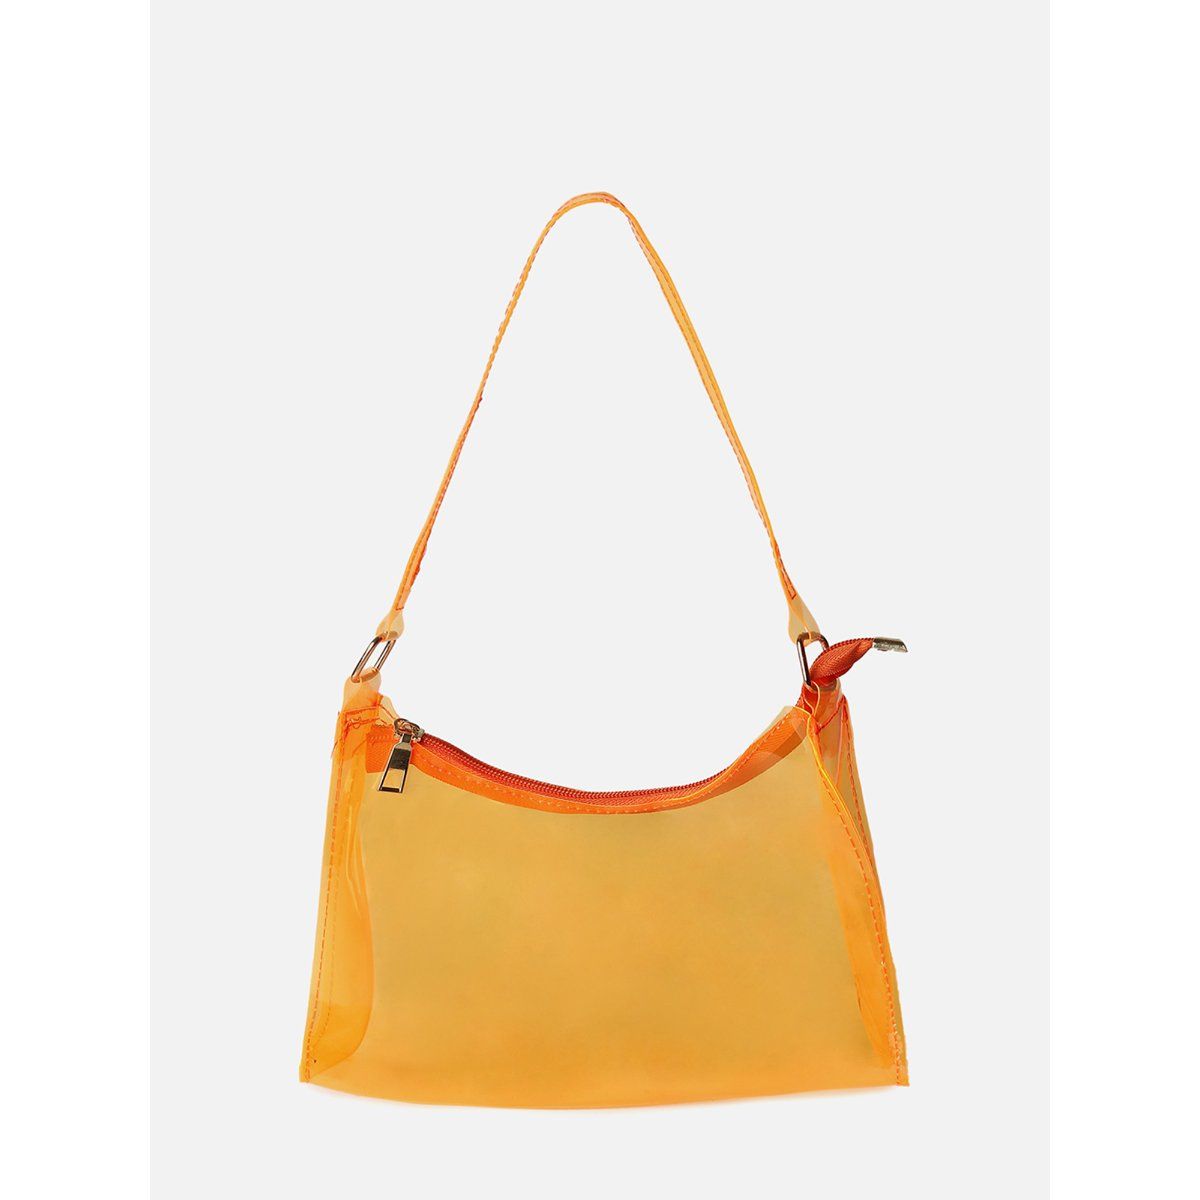 shopping bag louis vuitton orange bag